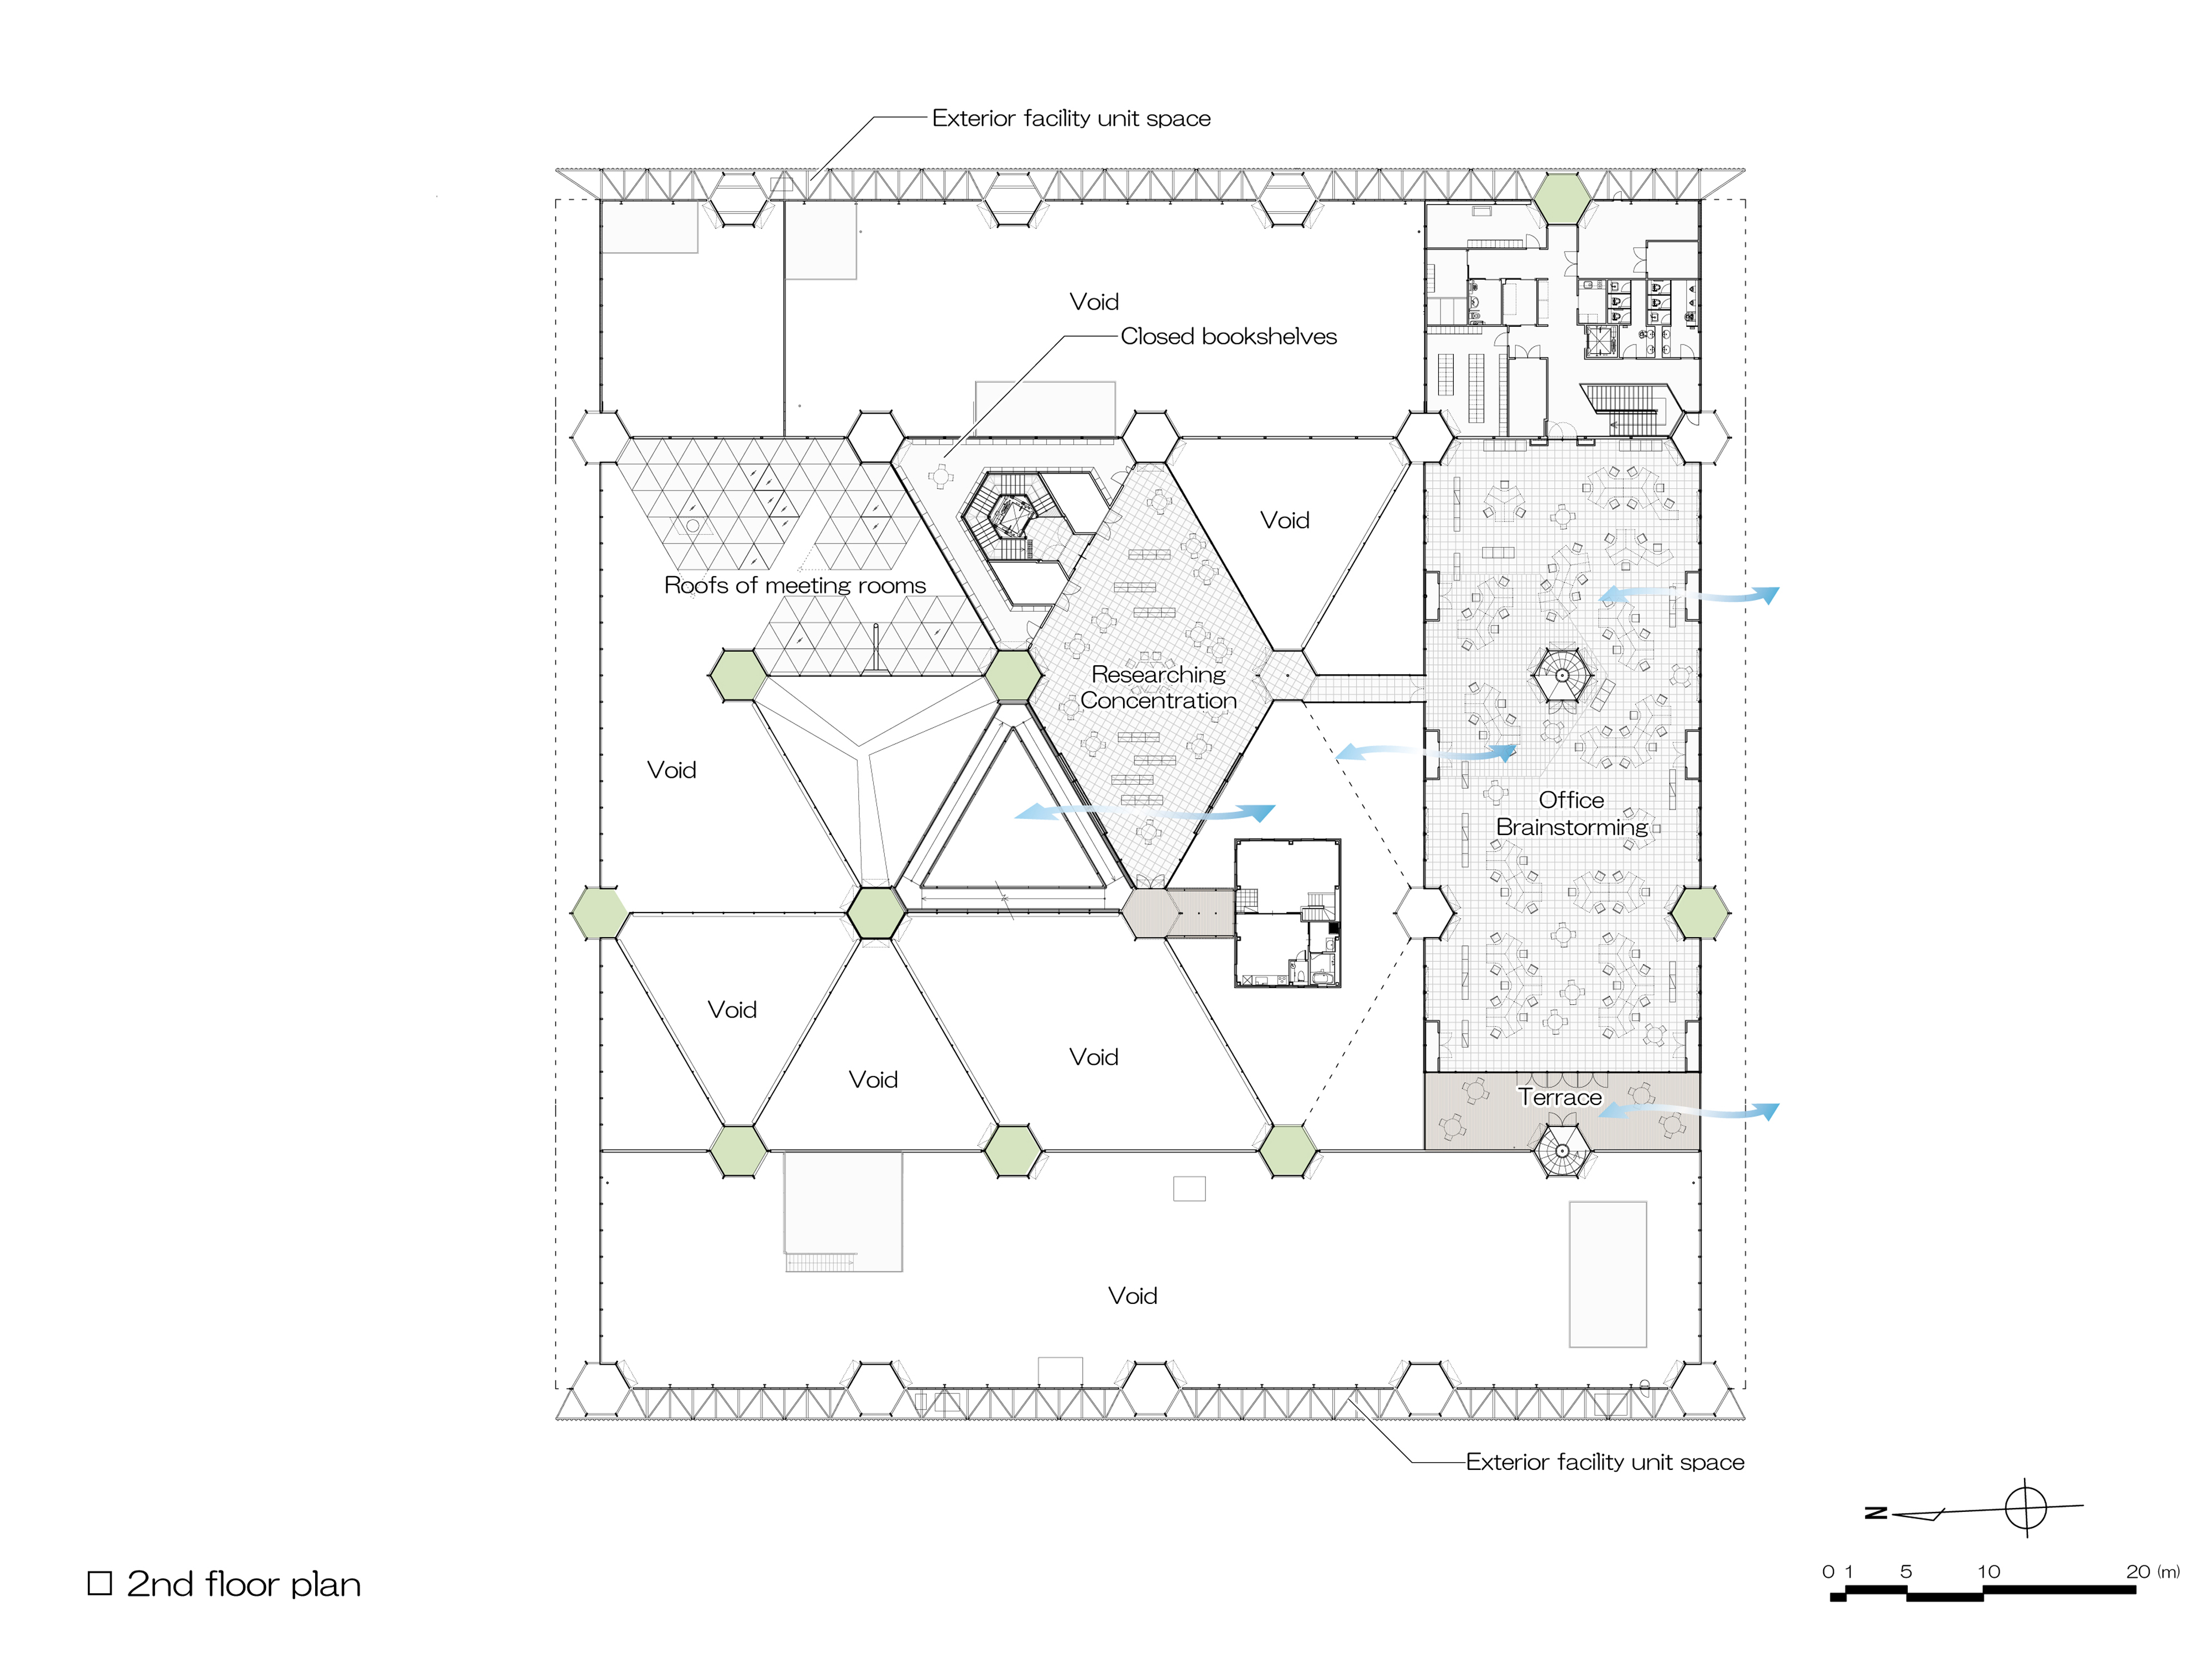 アロン化成ものづくりセンター | Hexagon / Aron R&D Center